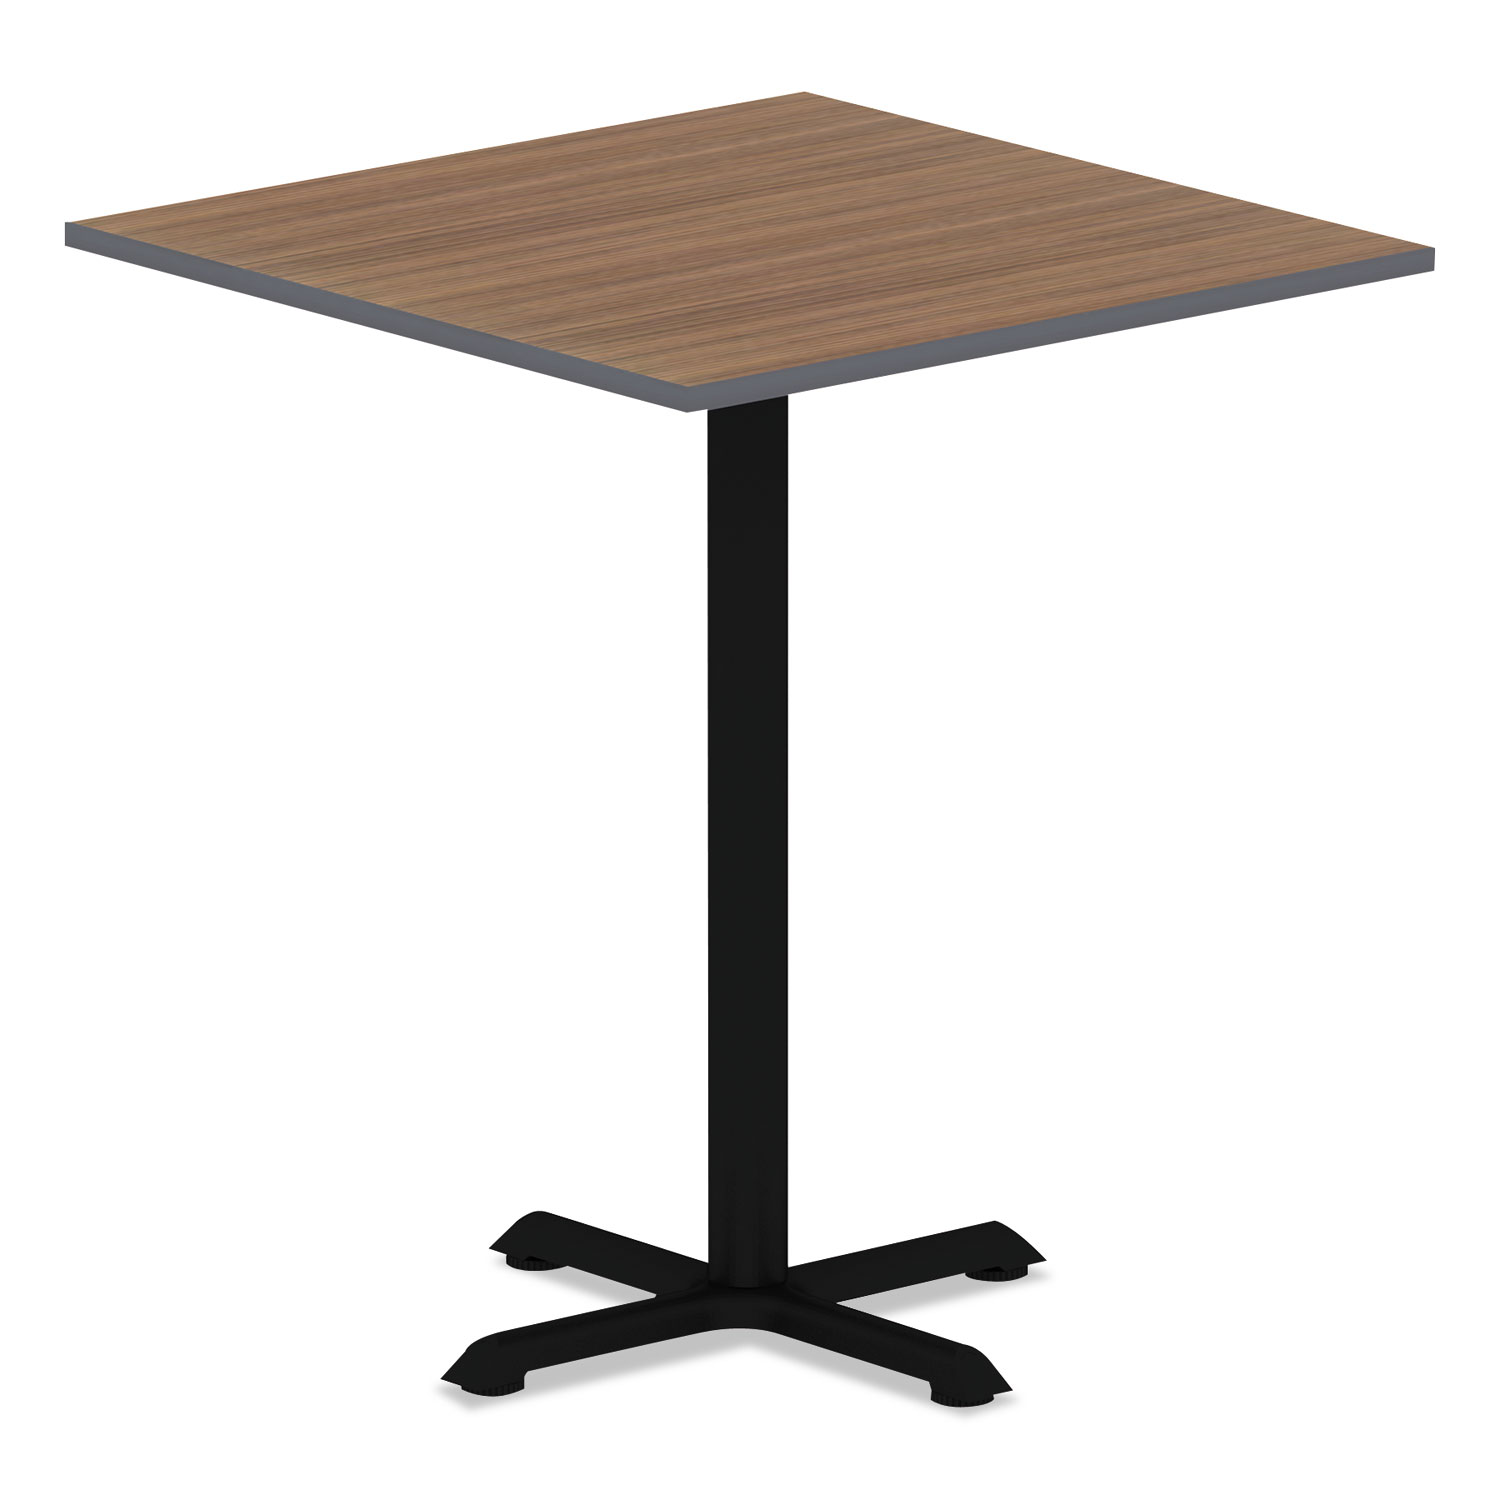 Reversible Laminate Table Top, Square, 35 1/2 x 35 1/2, Espresso/Walnut